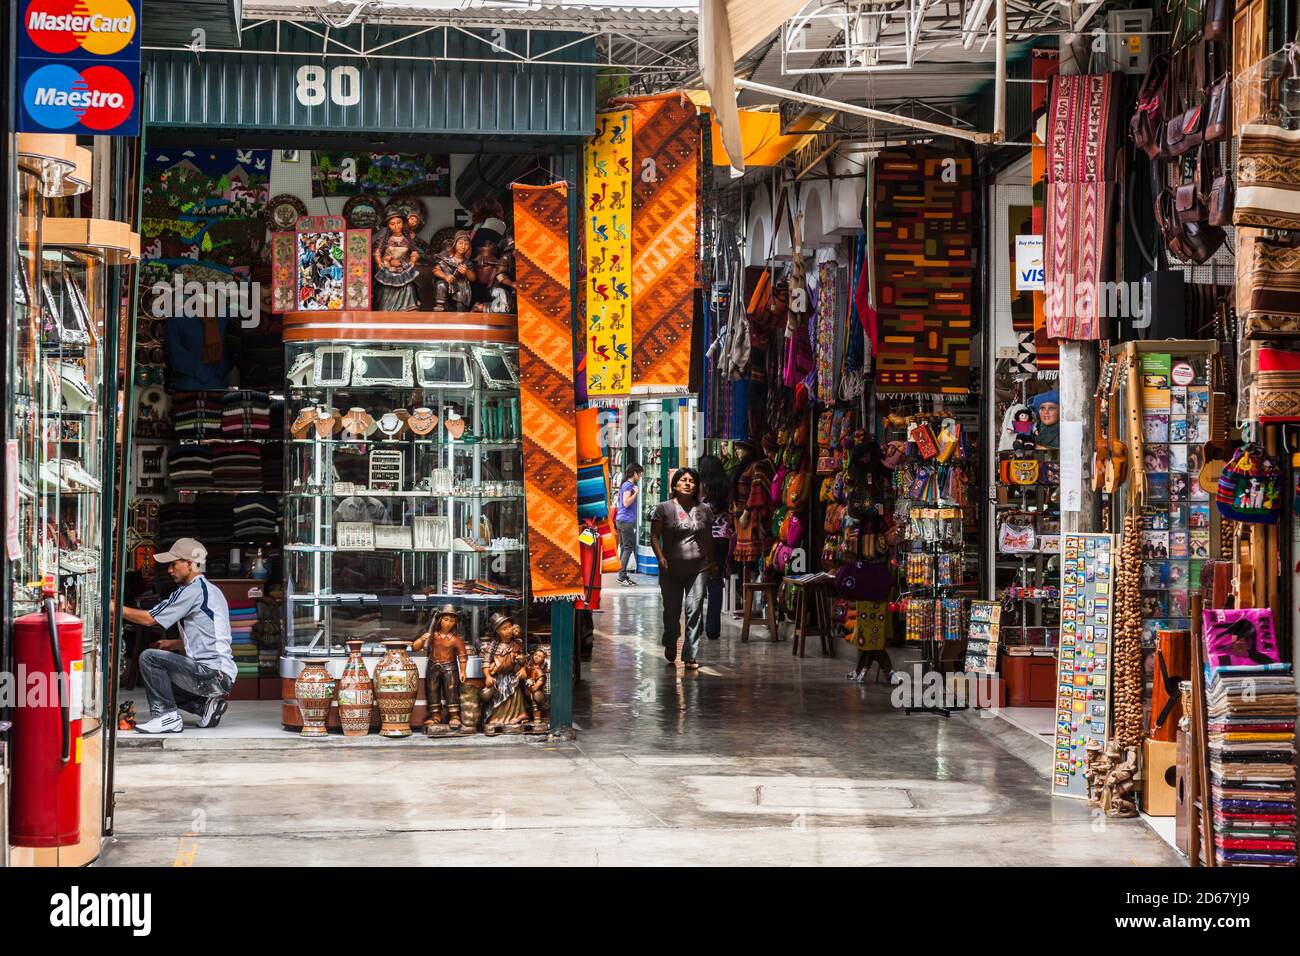 Geschäft des peruanischen Souvenirmarktes, 'Inka Plaza', Miraflores, Lima, Peru, Südamerika Stockfoto